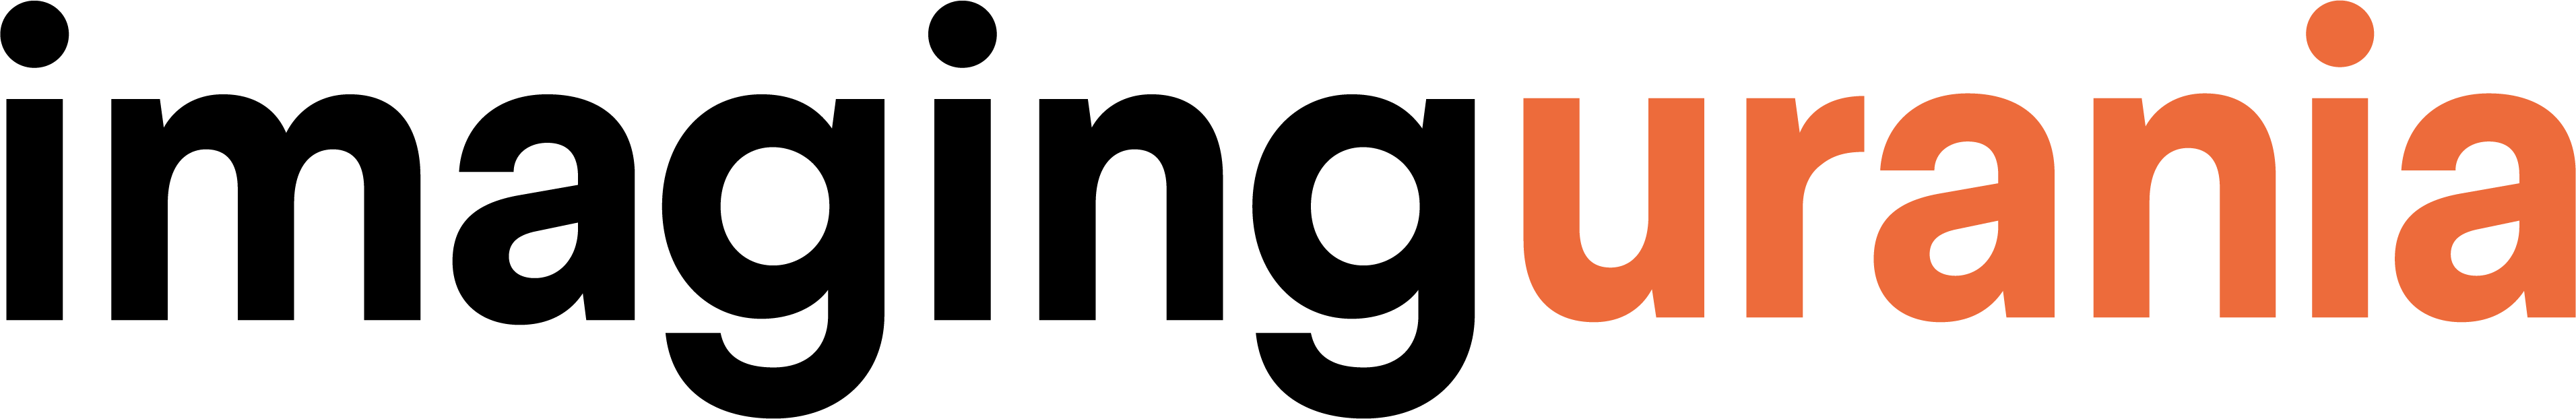 Logo Imaging Urania 2020 Pantone021 U